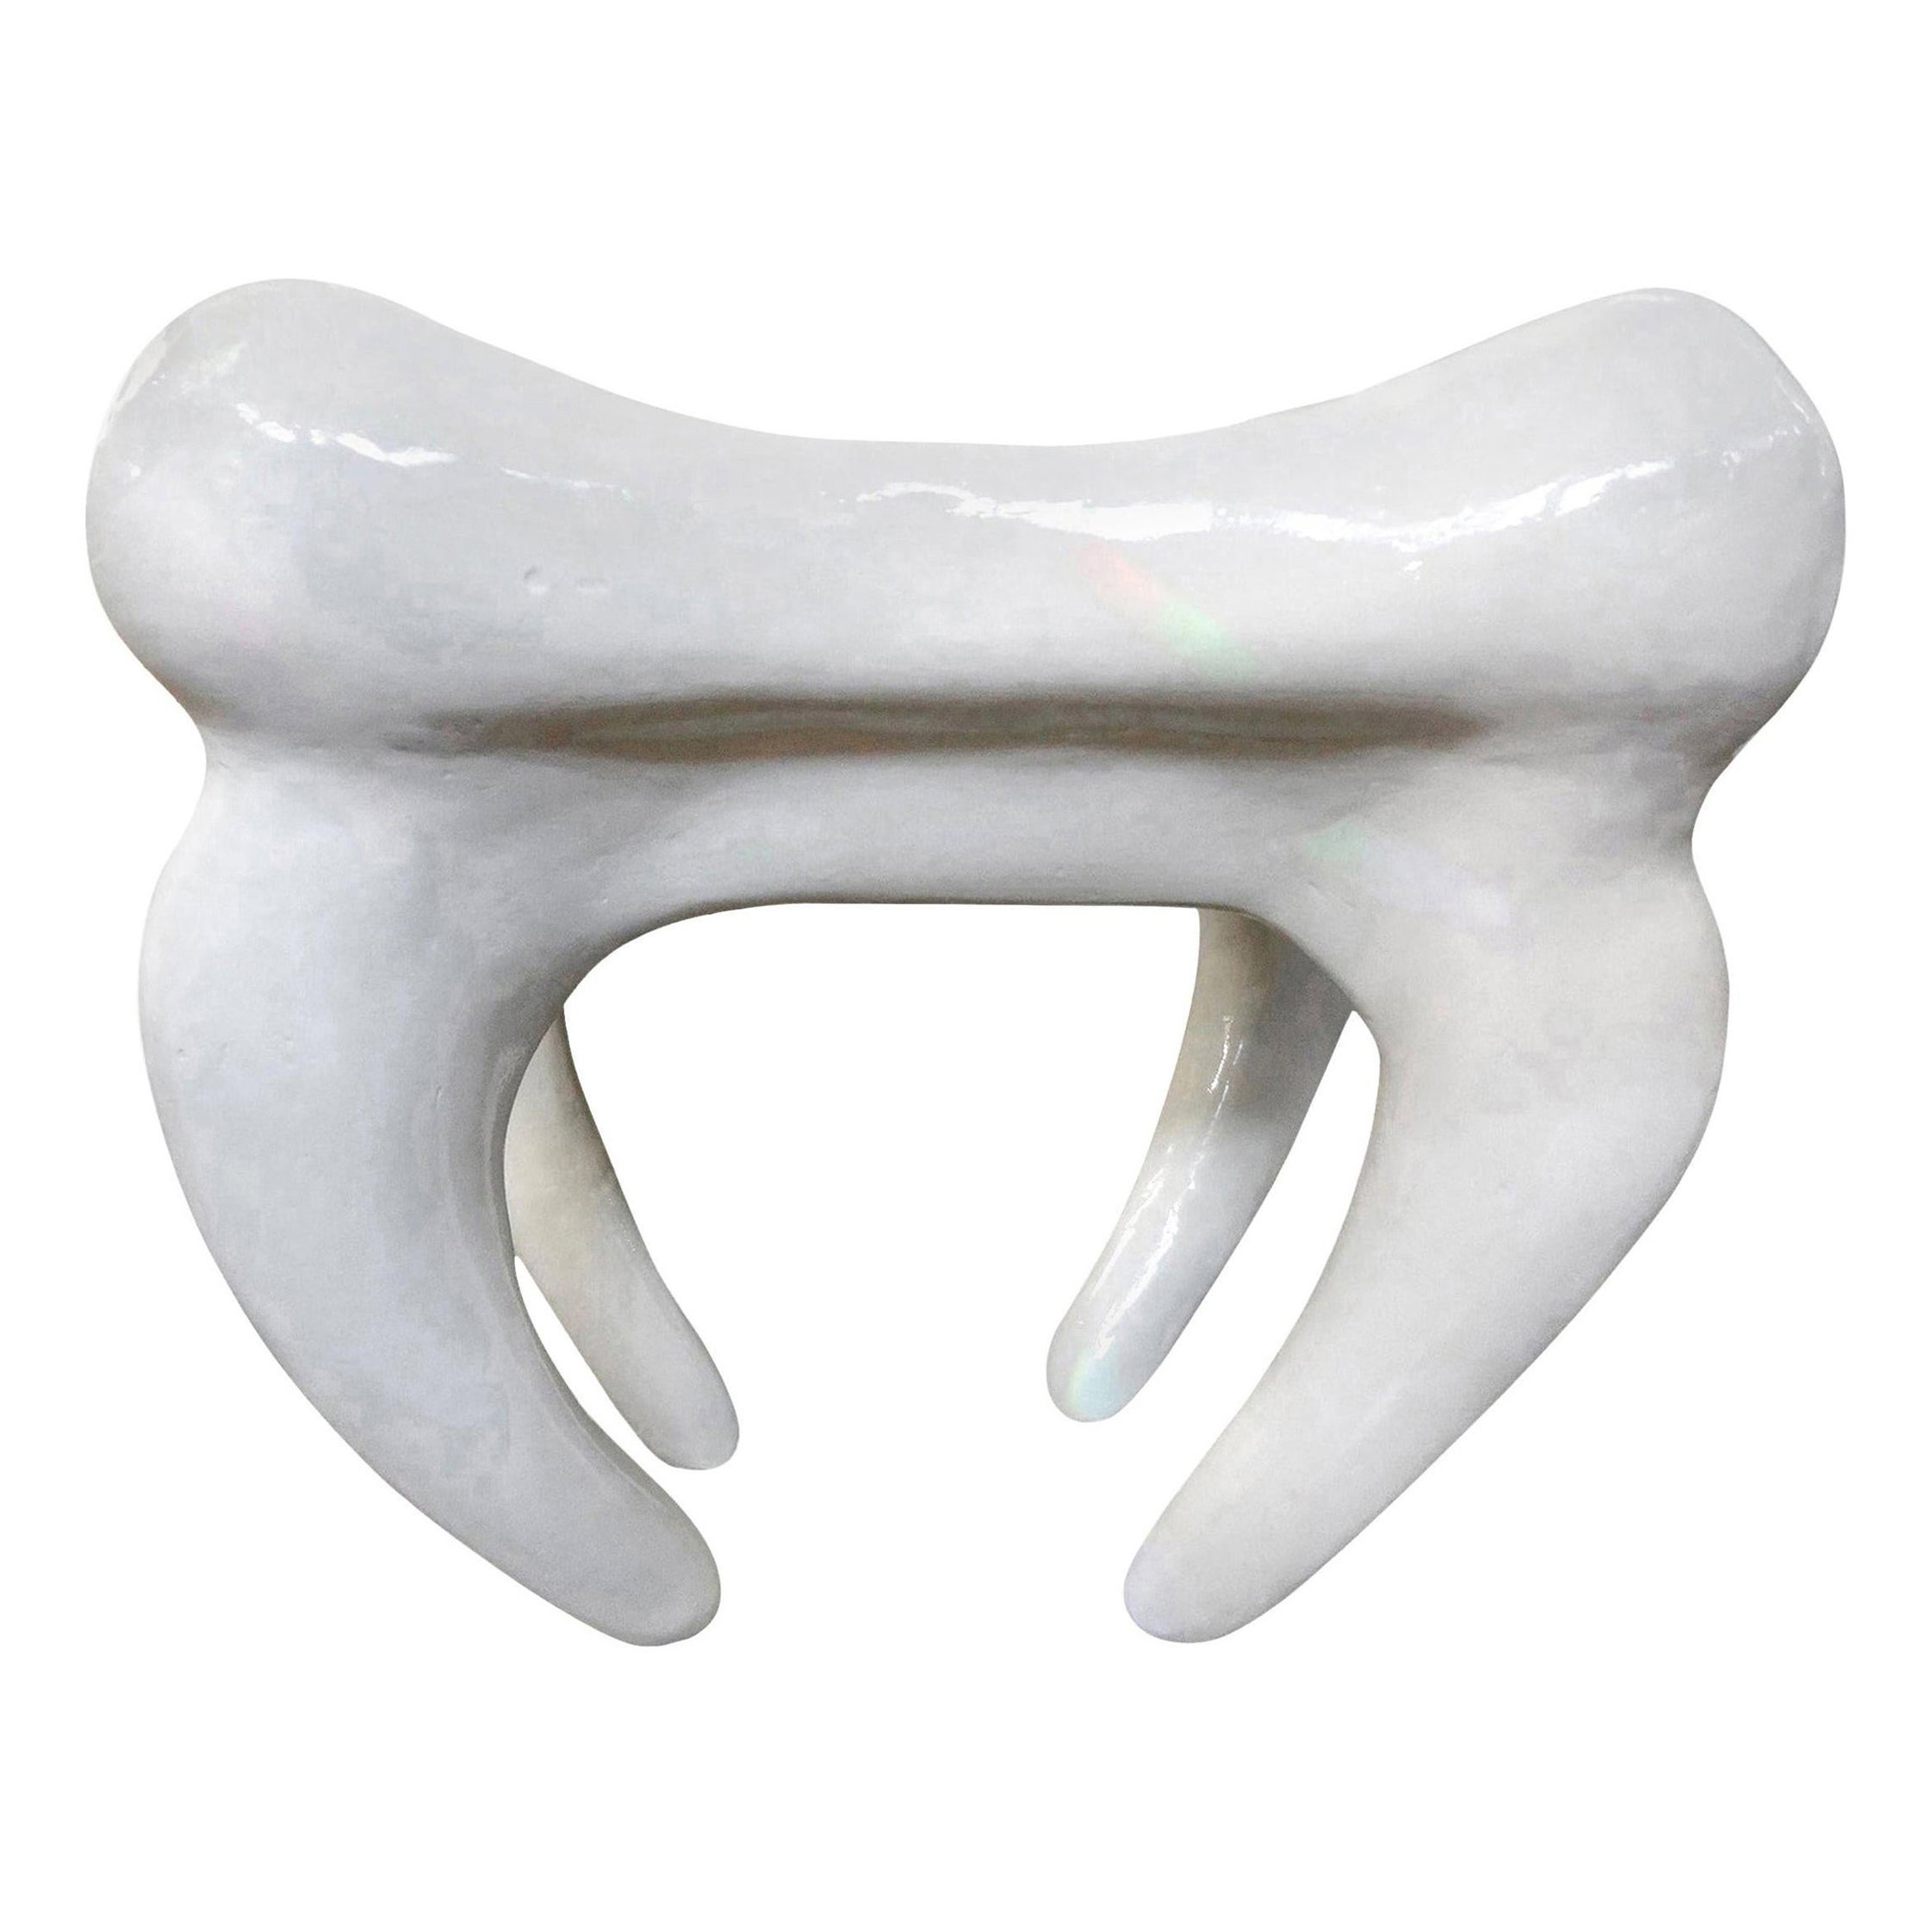 Postmoderner Gipstisch aus Gips in Form eines Molars